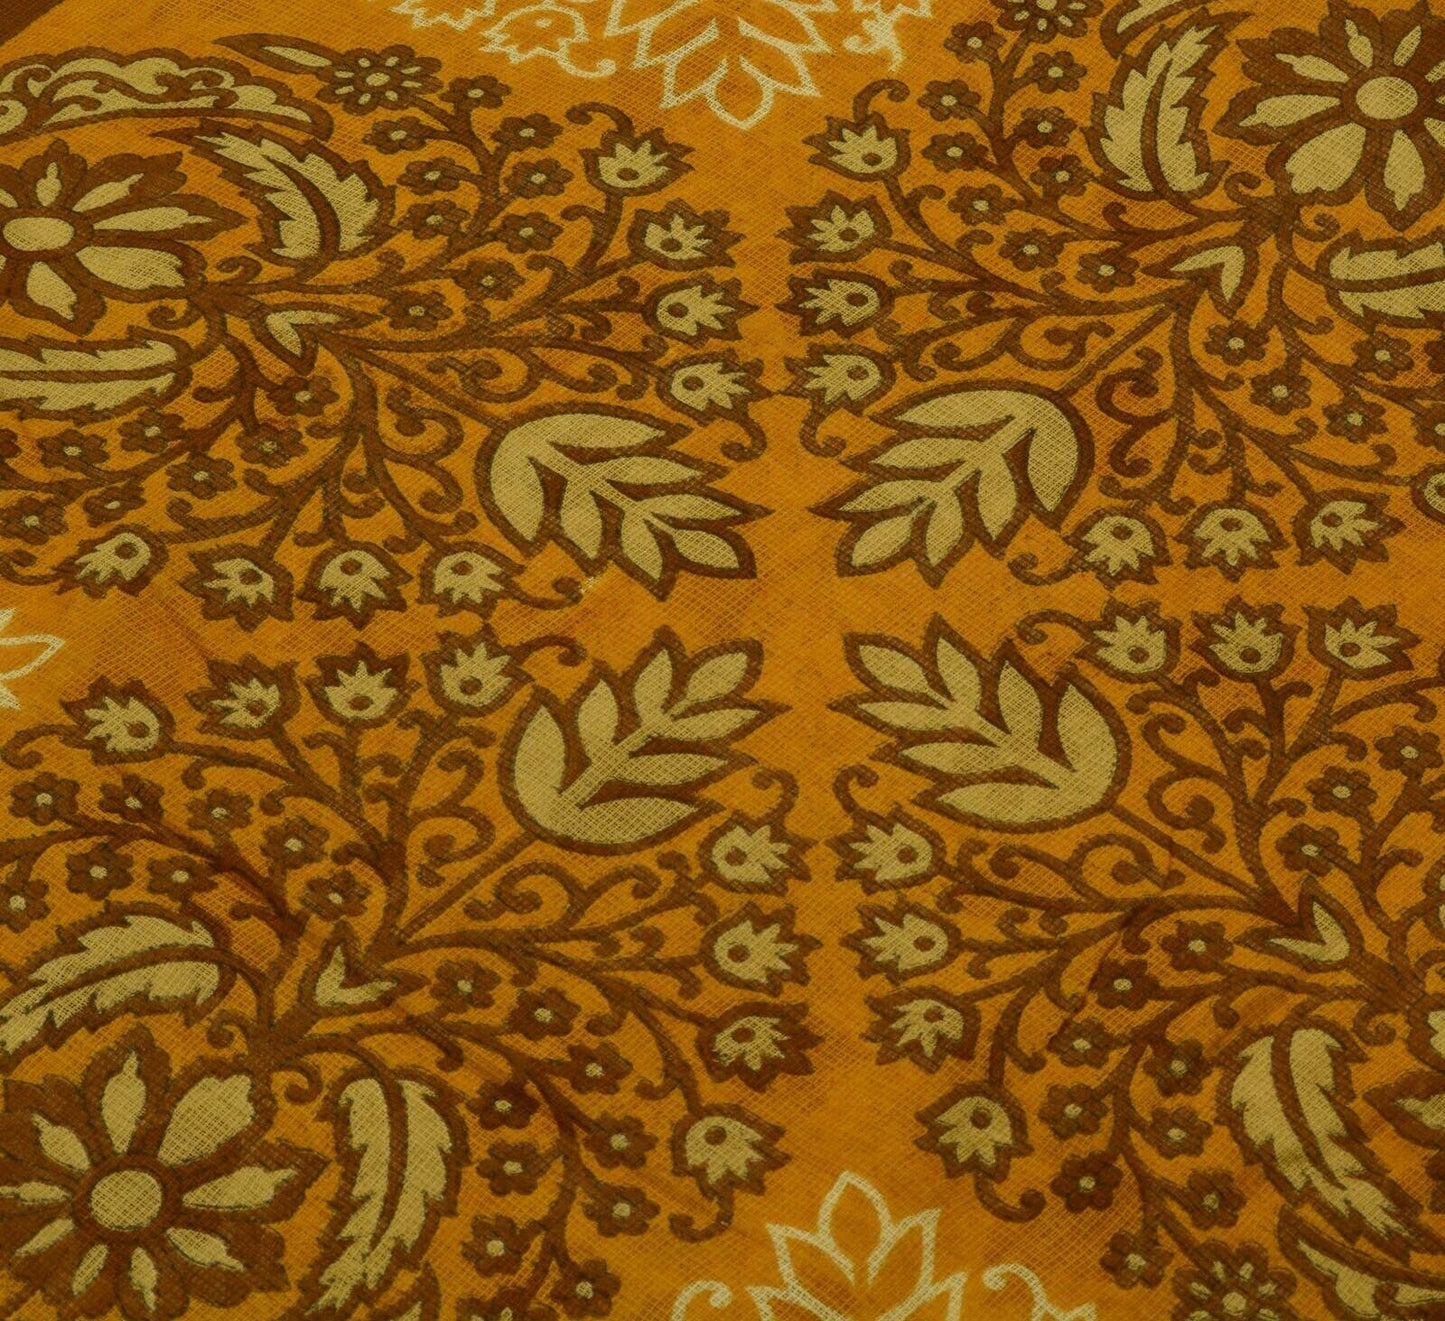 Vintage Saree 100% Pure Cotton Super Net Cream Printed Scrap Sari For Craft